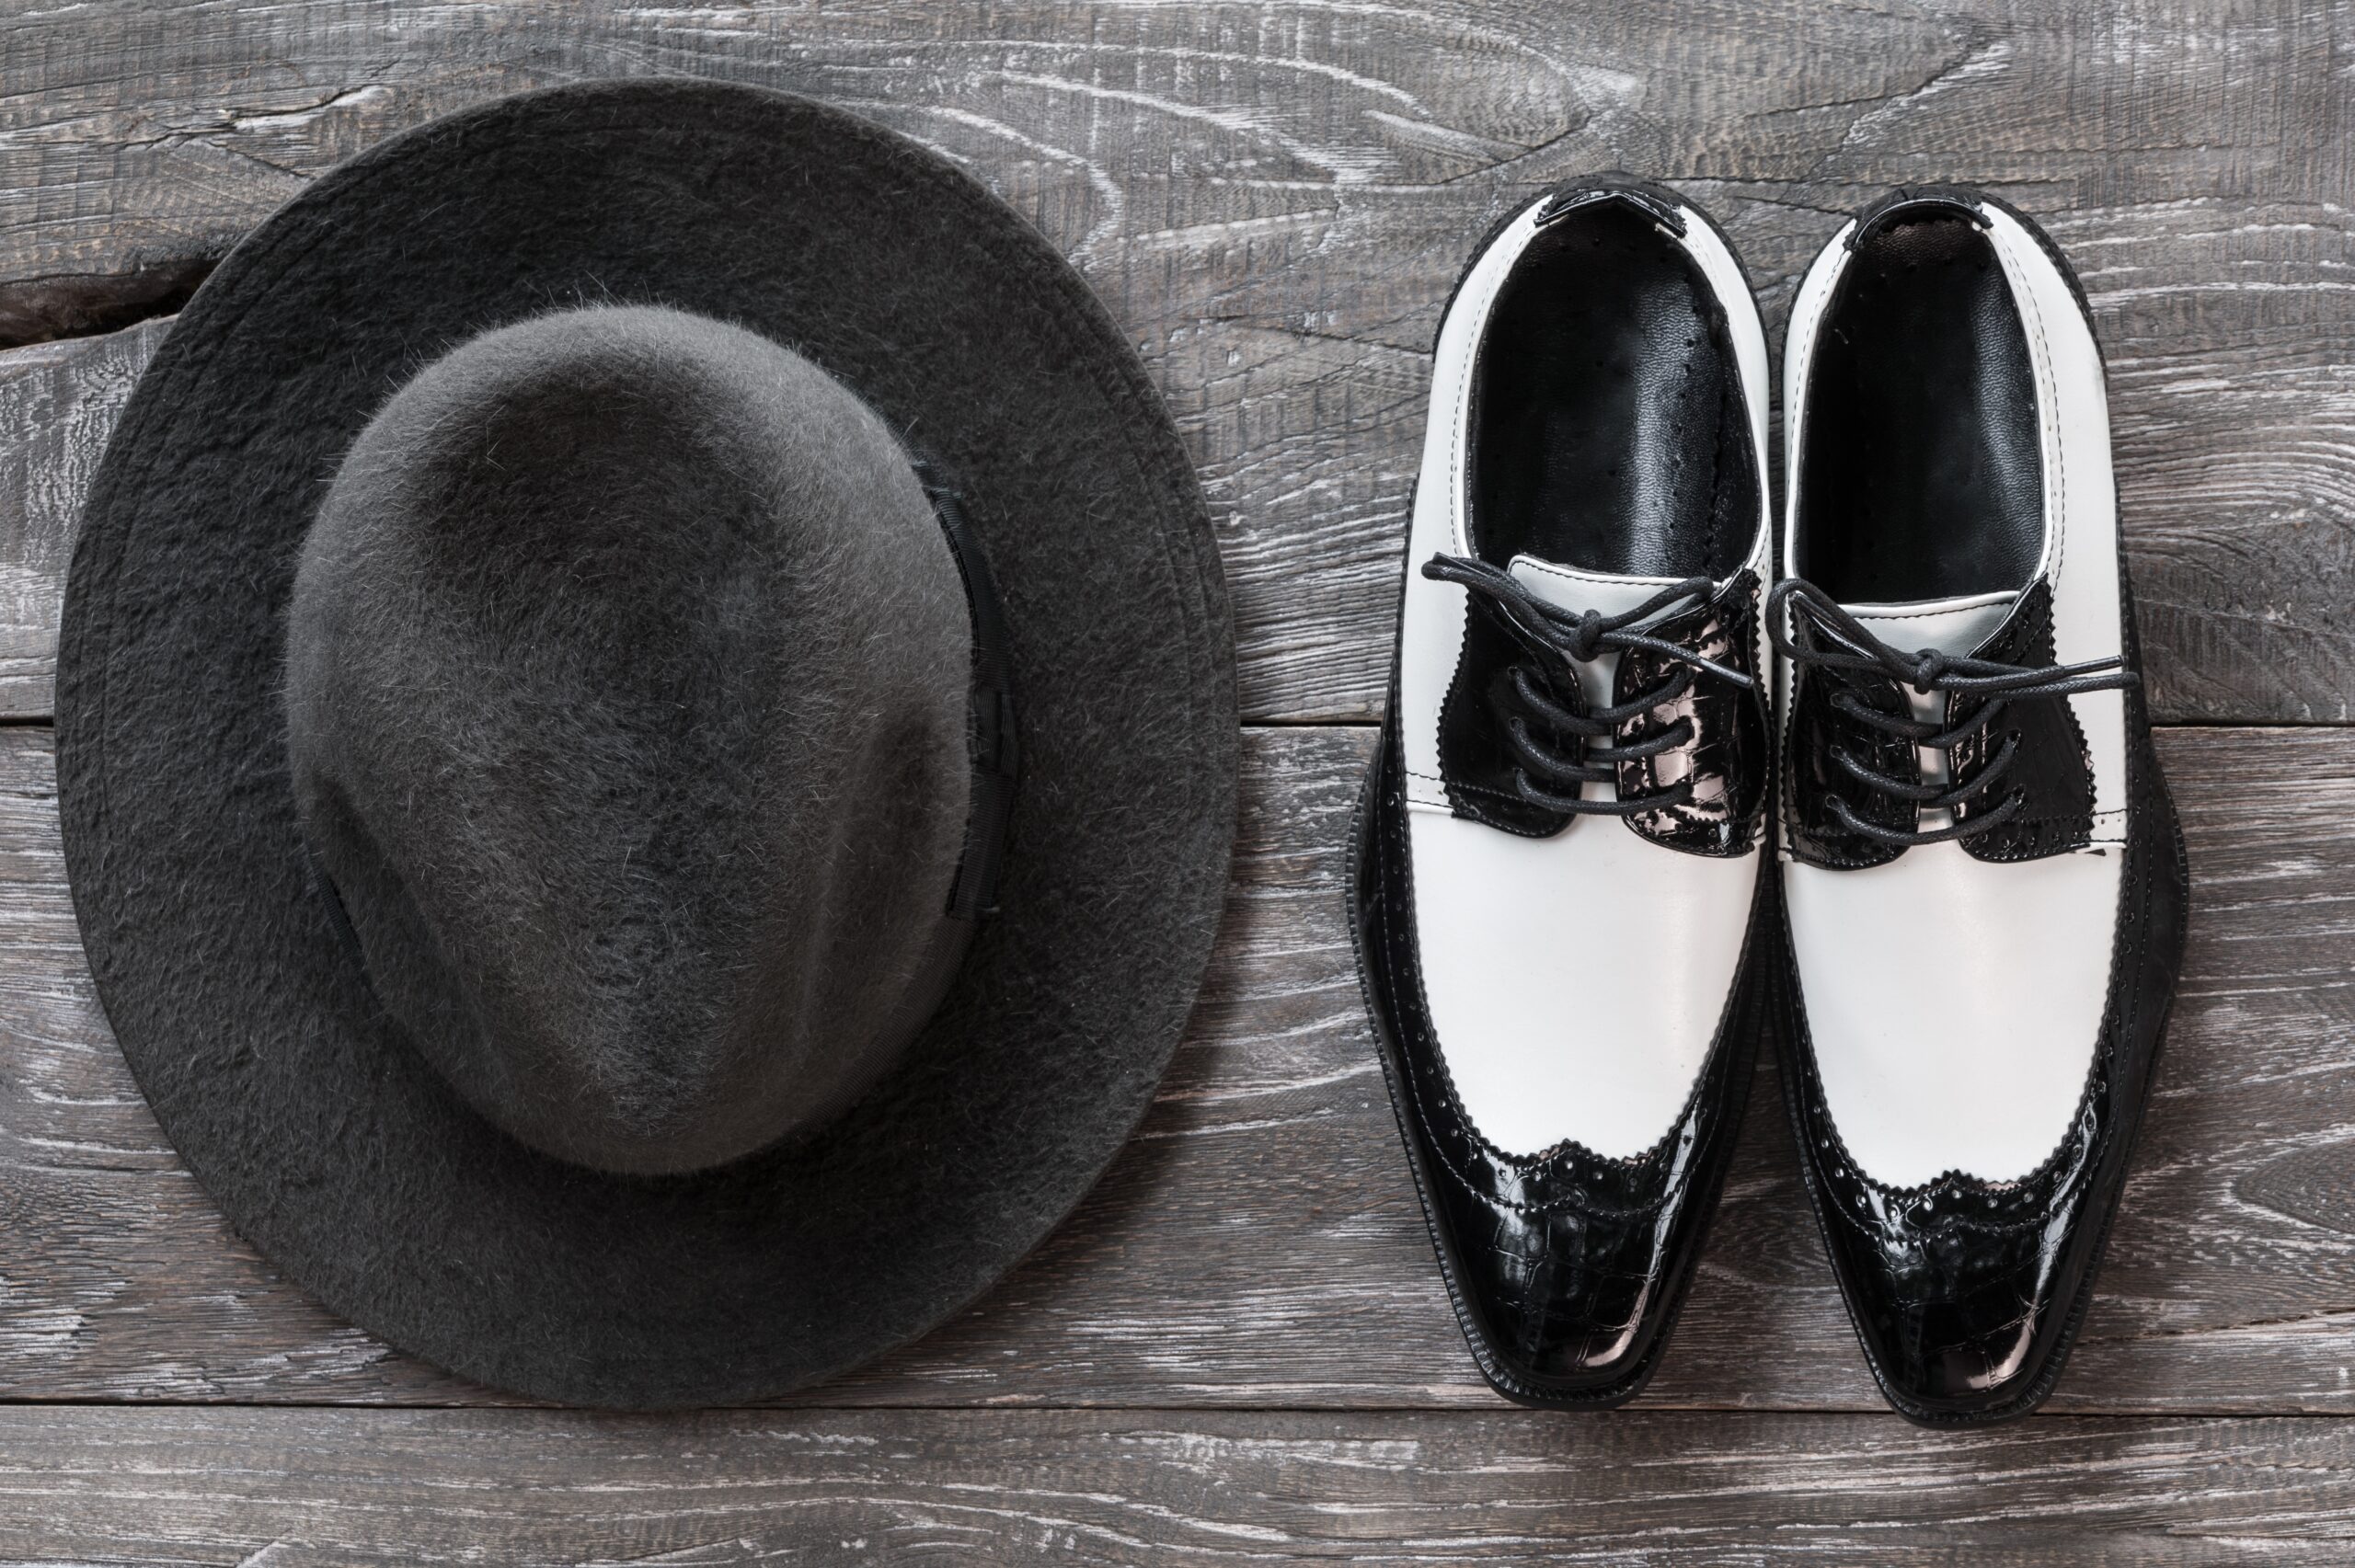 Buty caponki – dwukolorowe buty warte uwagi. Co musisz o nich wiedzieć?